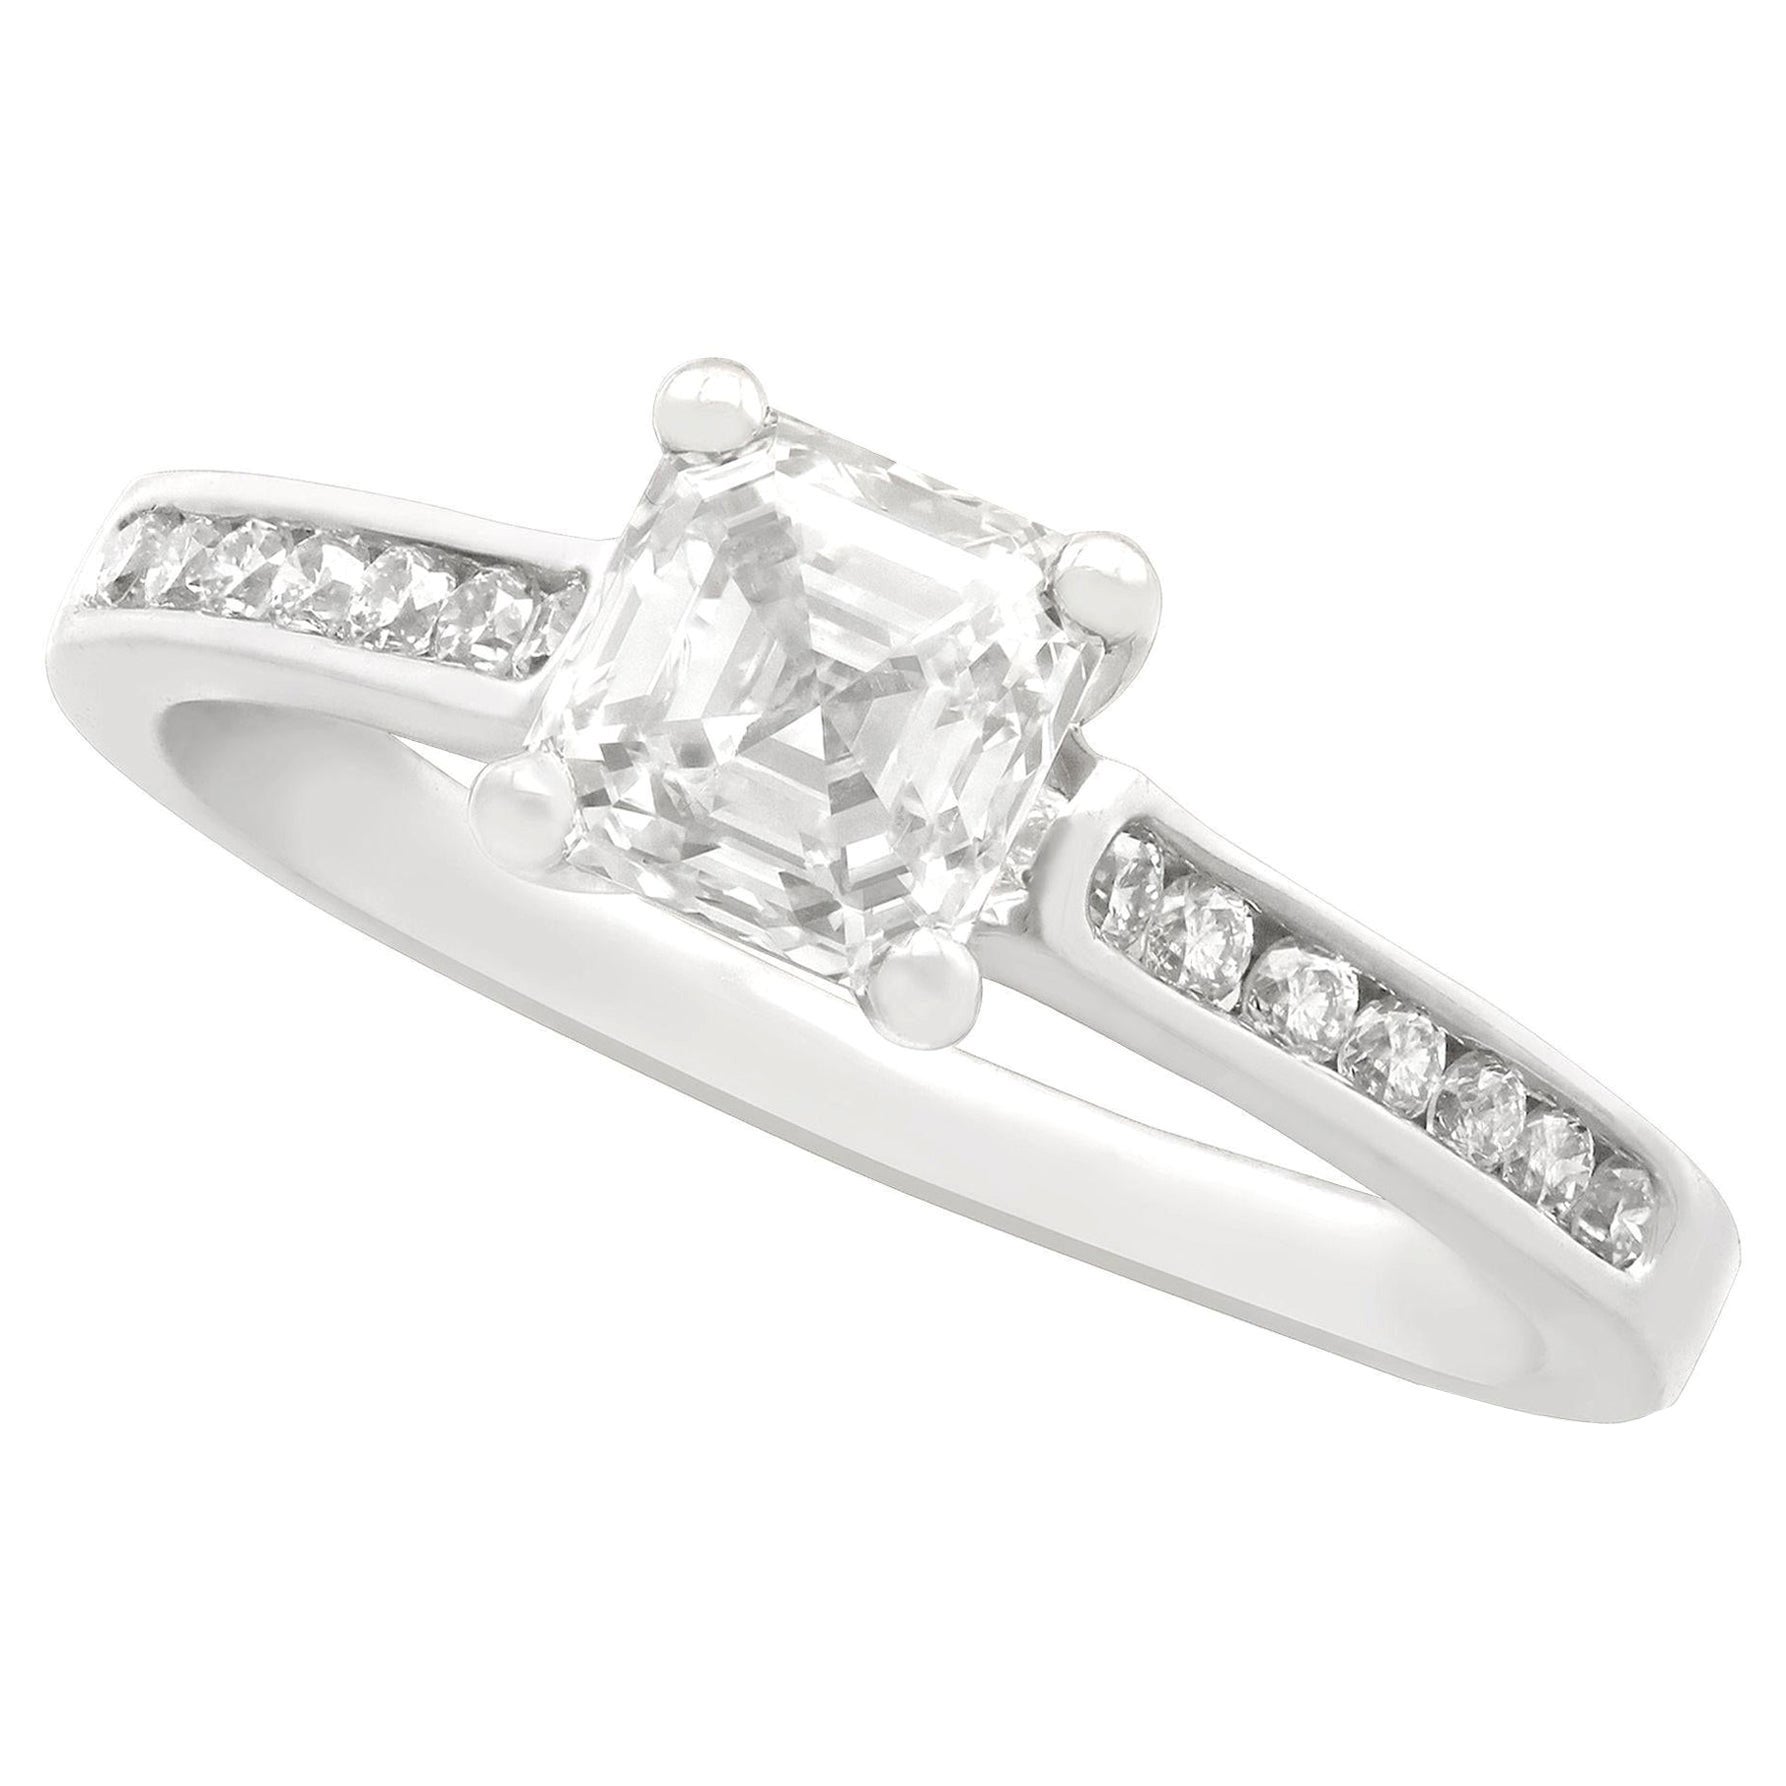 1.19 Carat Diamond and Platinum Solitaire Engagement Ring